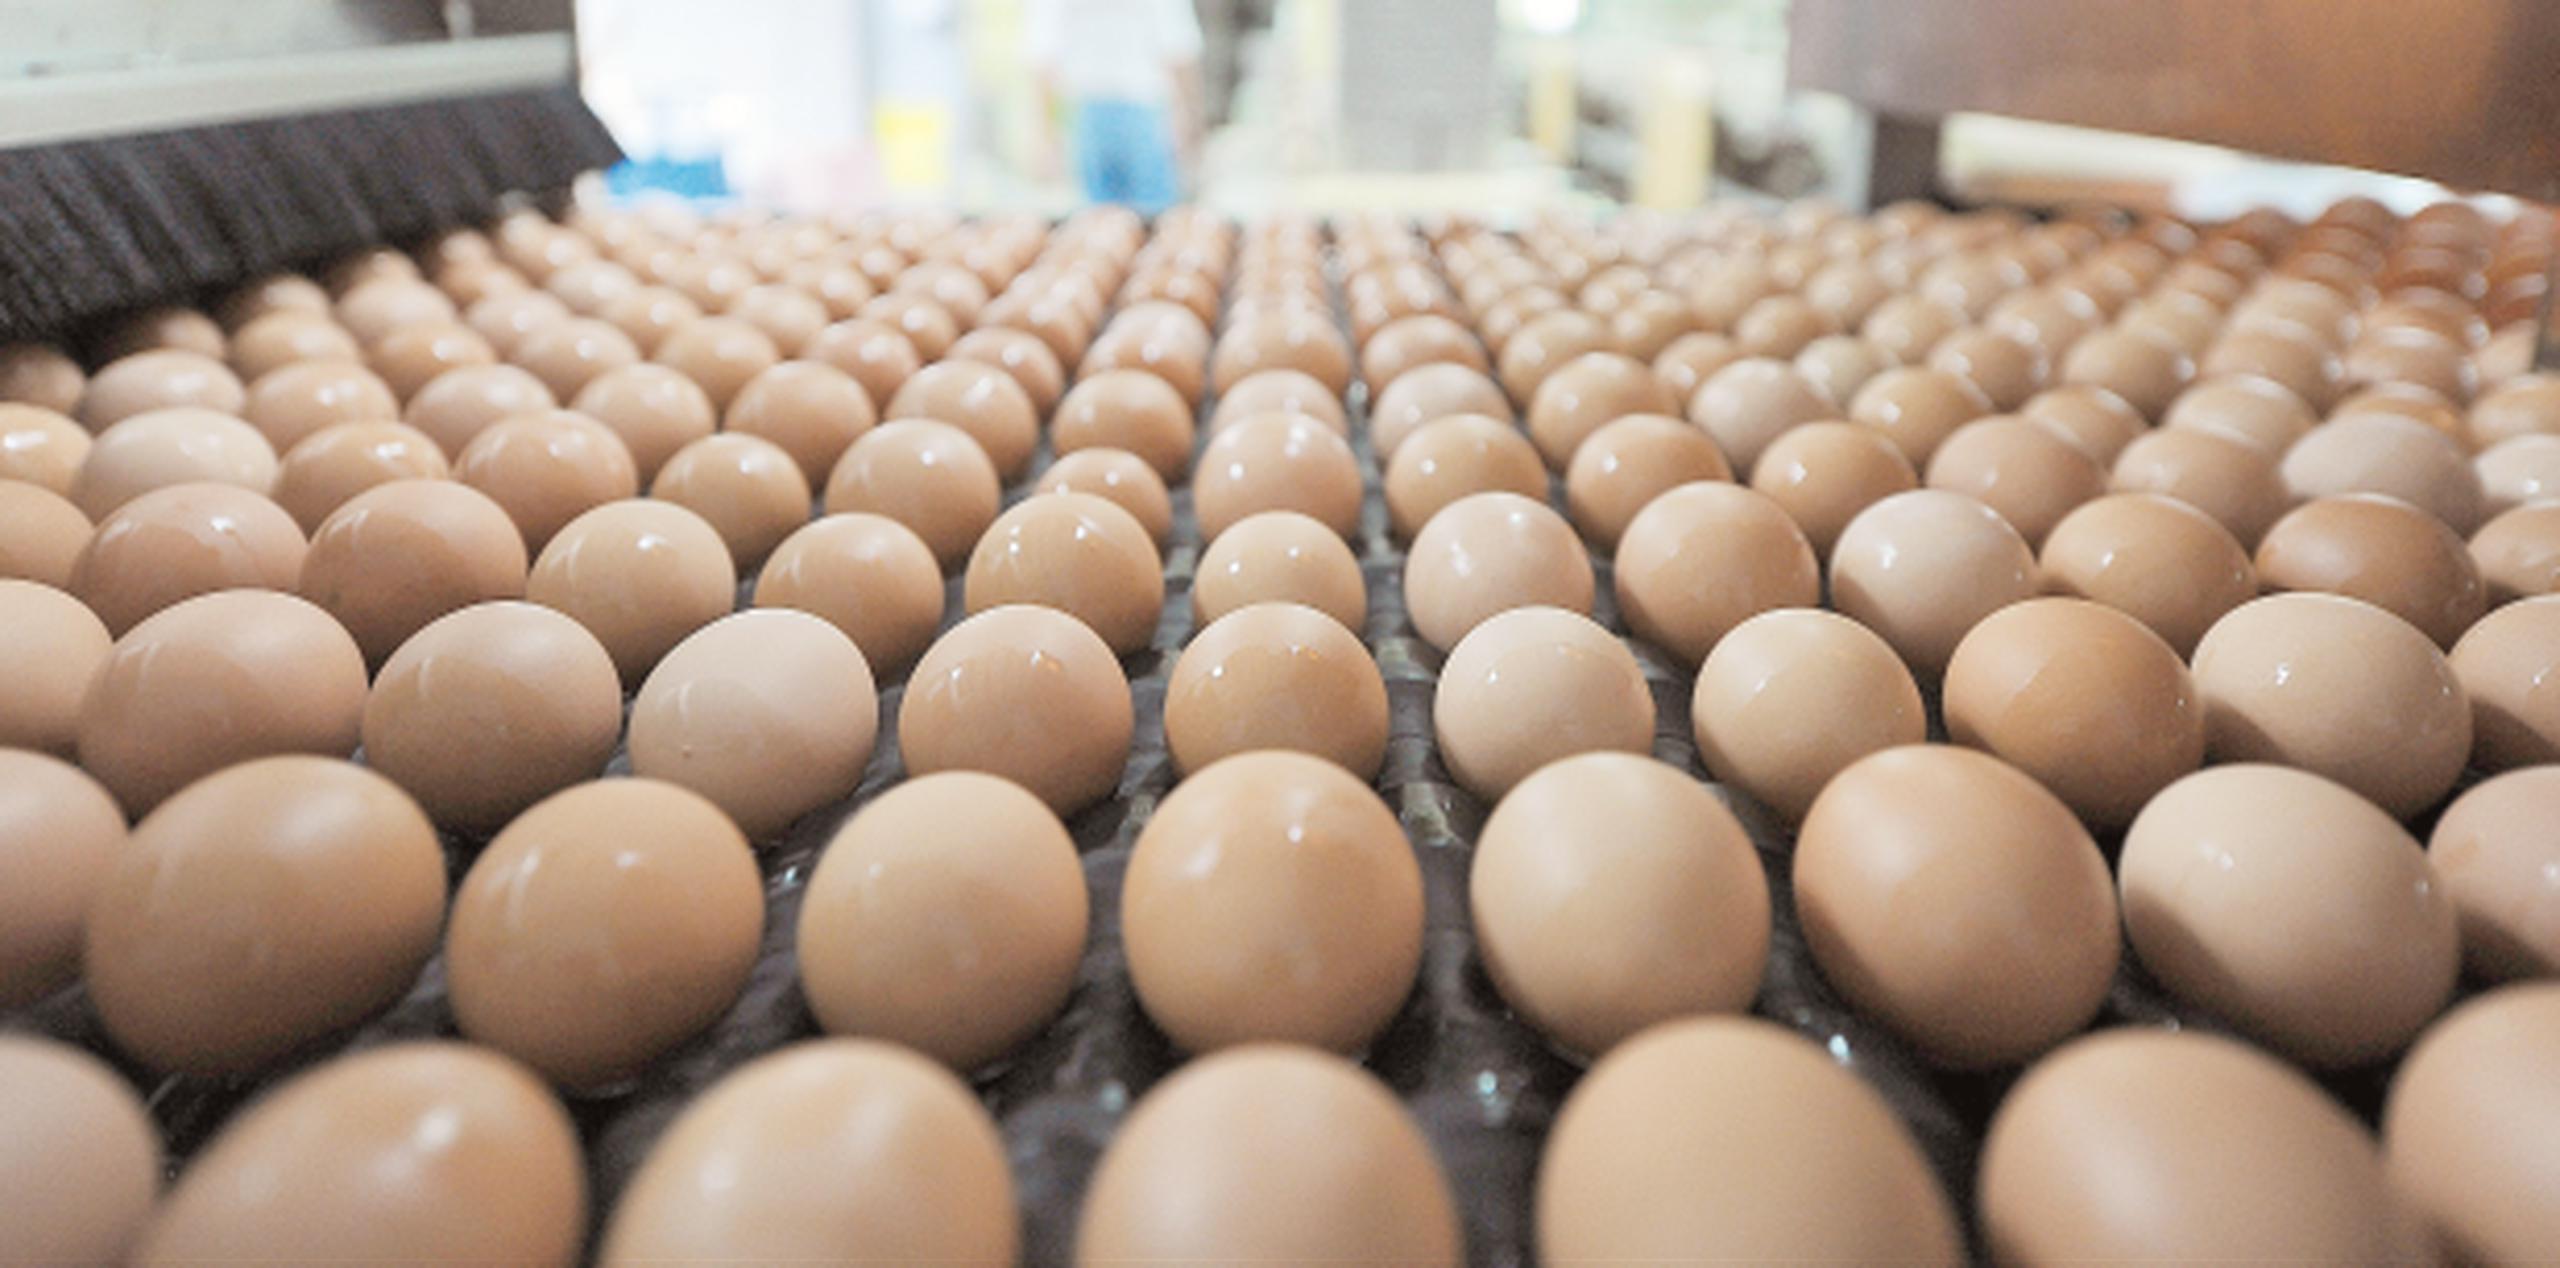 Independientemente de que el huevo importado acapare más de un 90% del mercado local, la realidad es que está más caro. (Archivo)